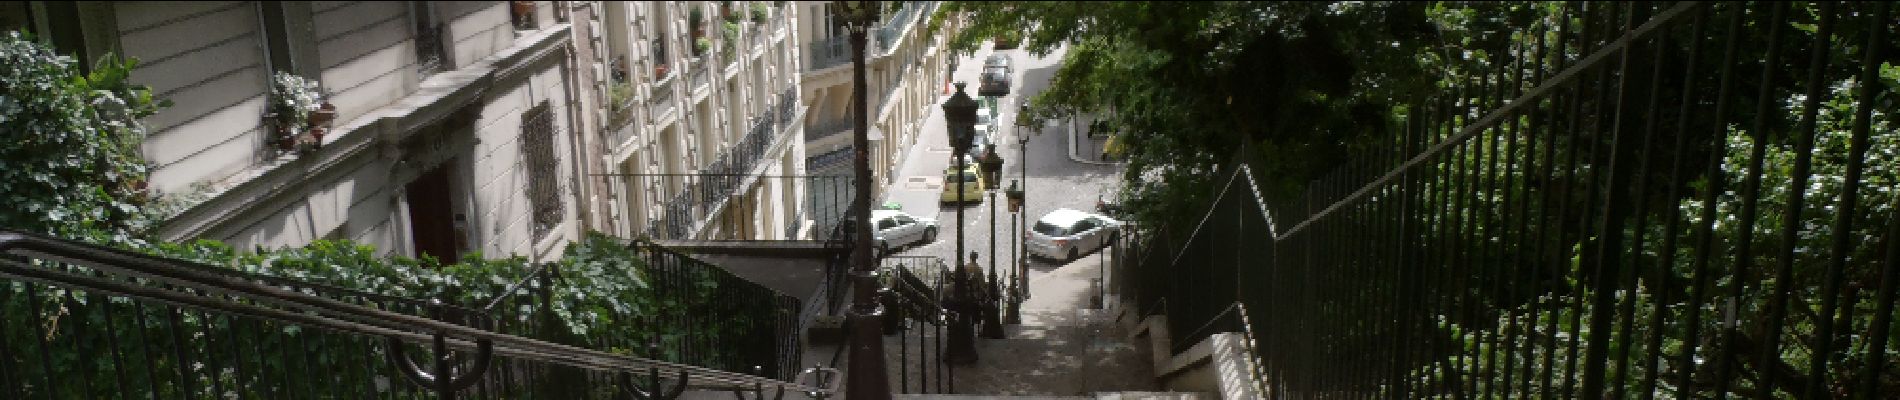 Point of interest Paris - Escaliers - Photo